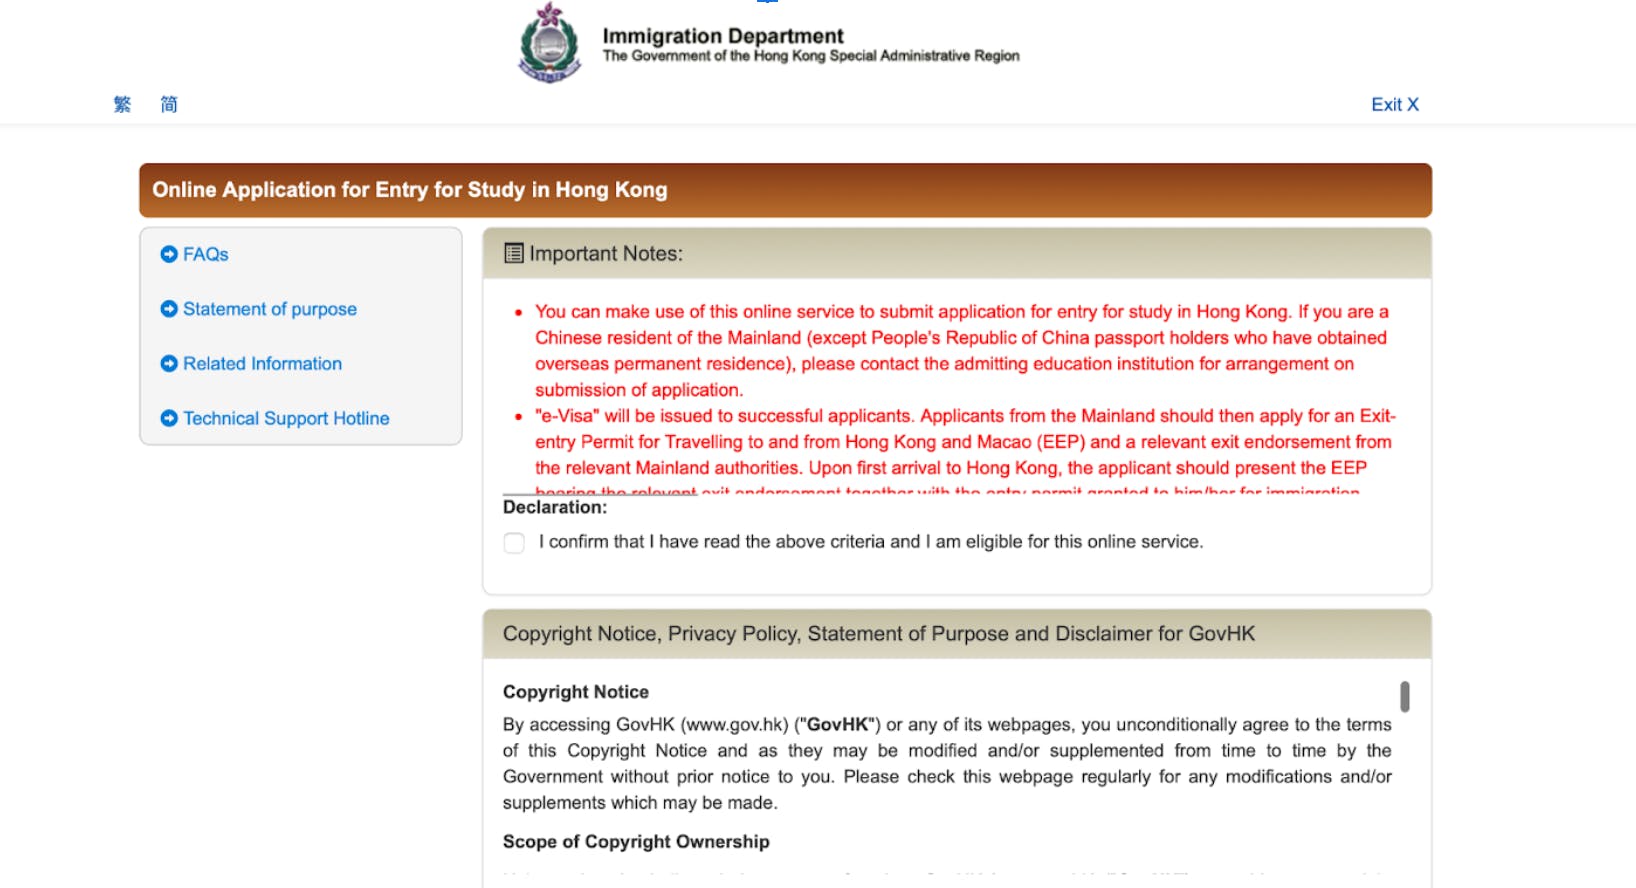 Apply for the Hong Kong student visa